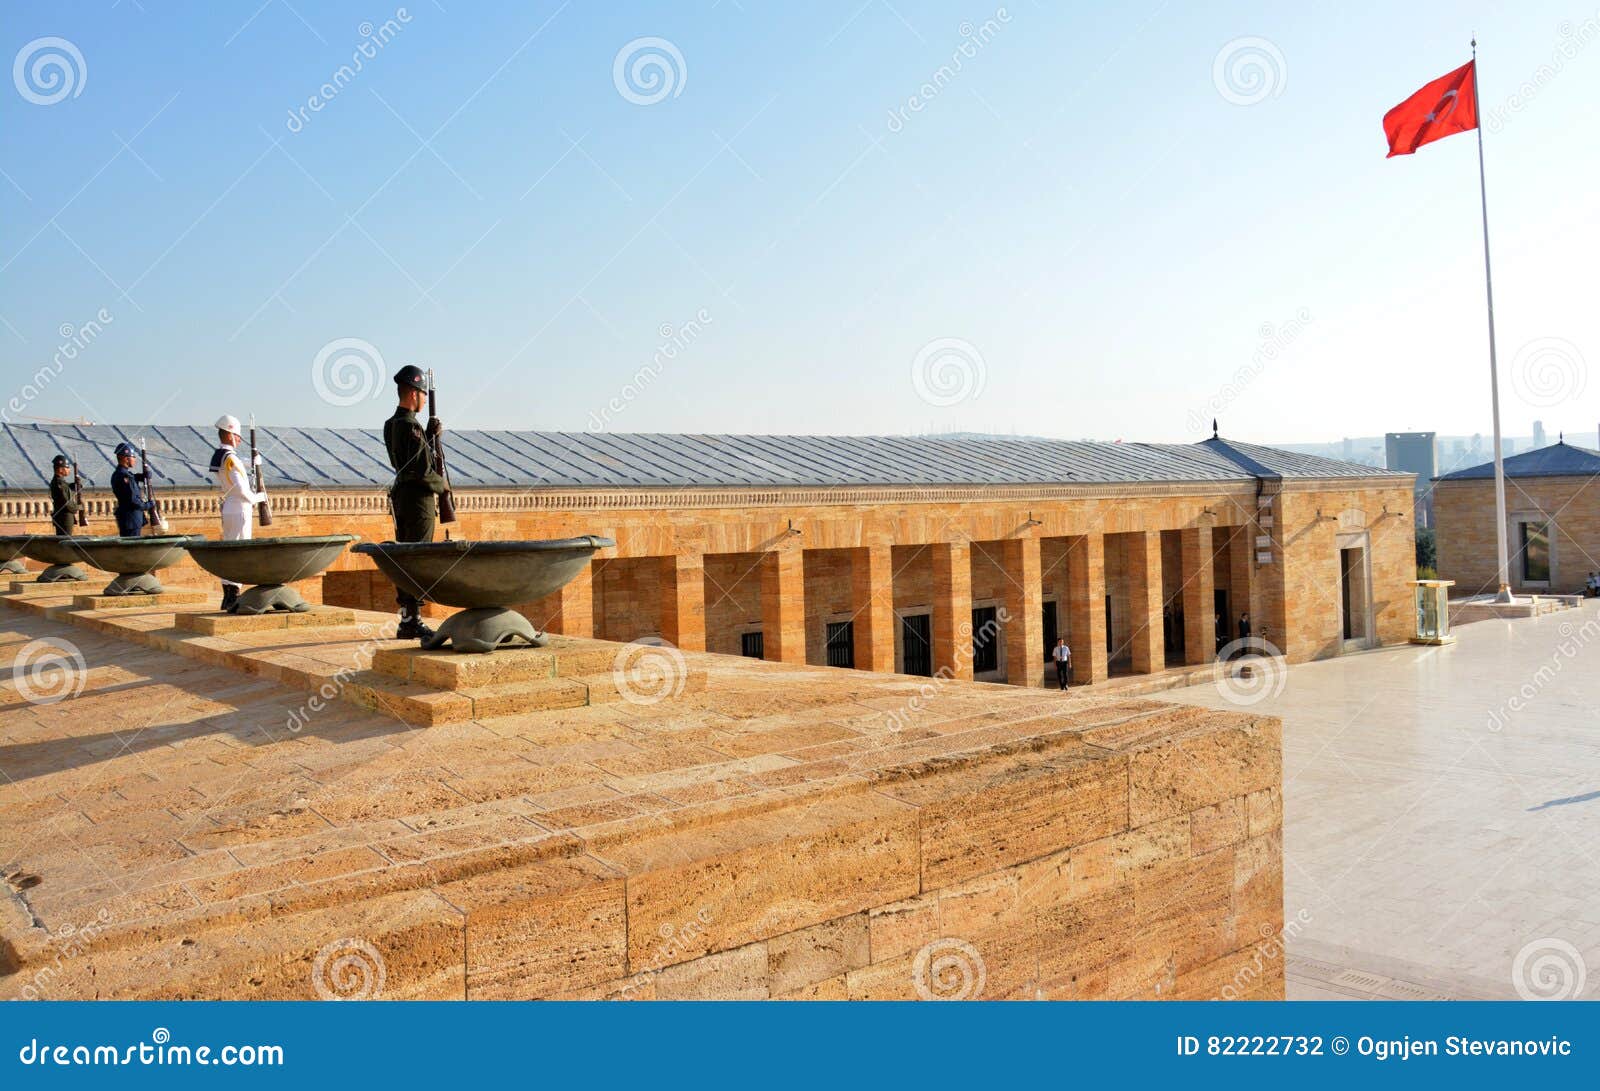 Erewachten Bij Het Ataturk-Mausoleum Redactionele Fotografie - Image of ...